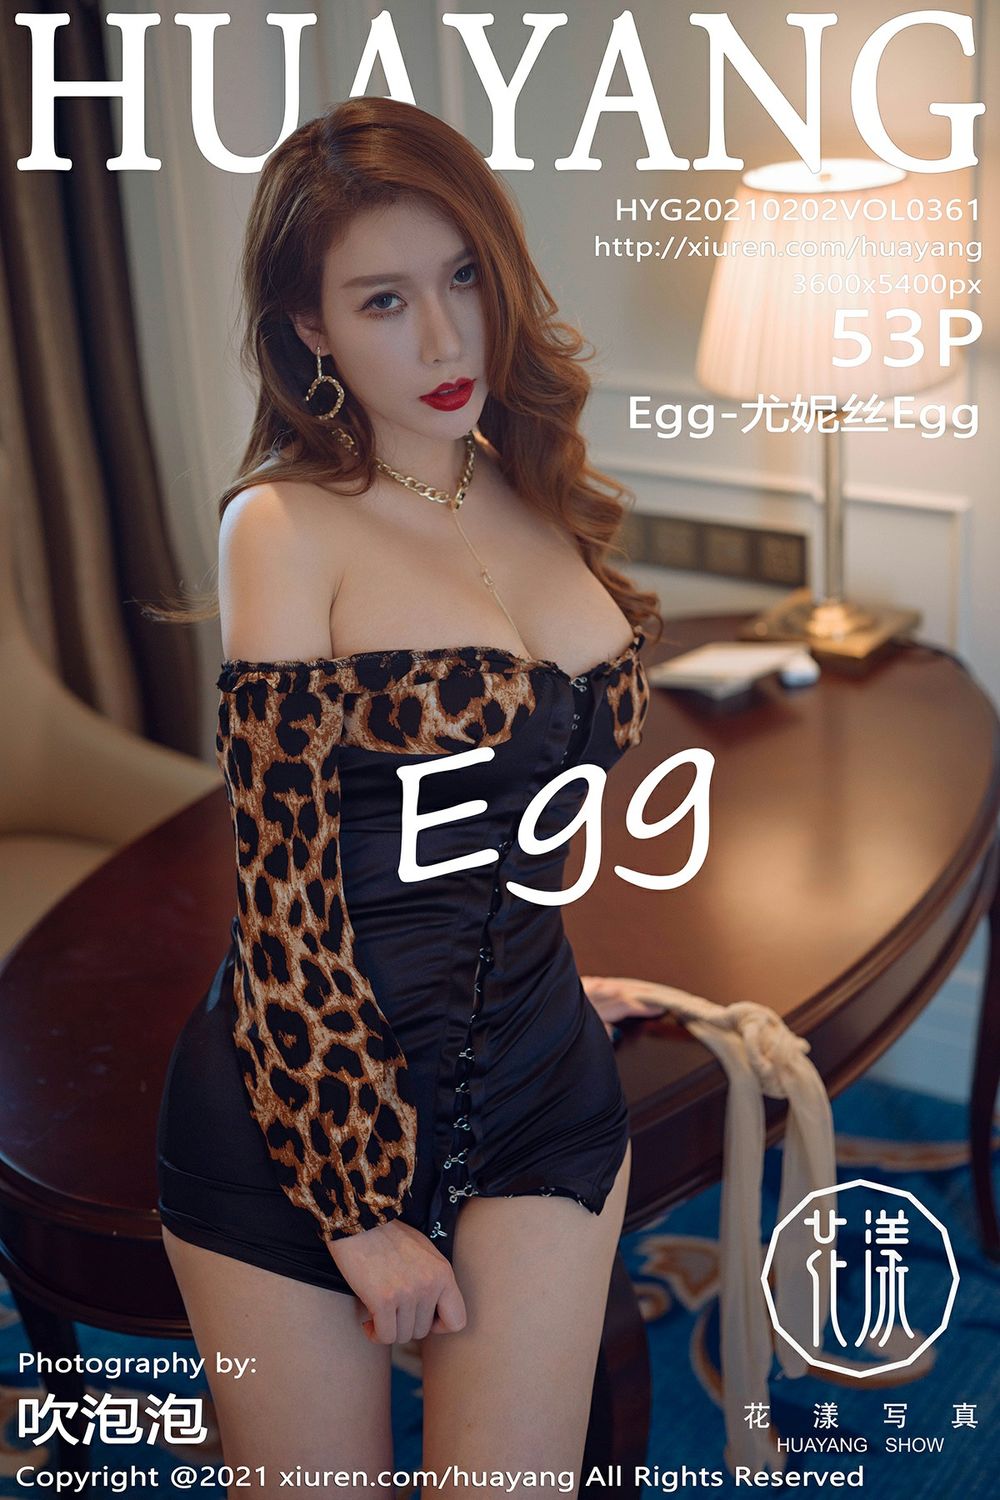 性感女神尤妮丝Egg低胸豹纹礼裙丰腴身材厦门旅拍